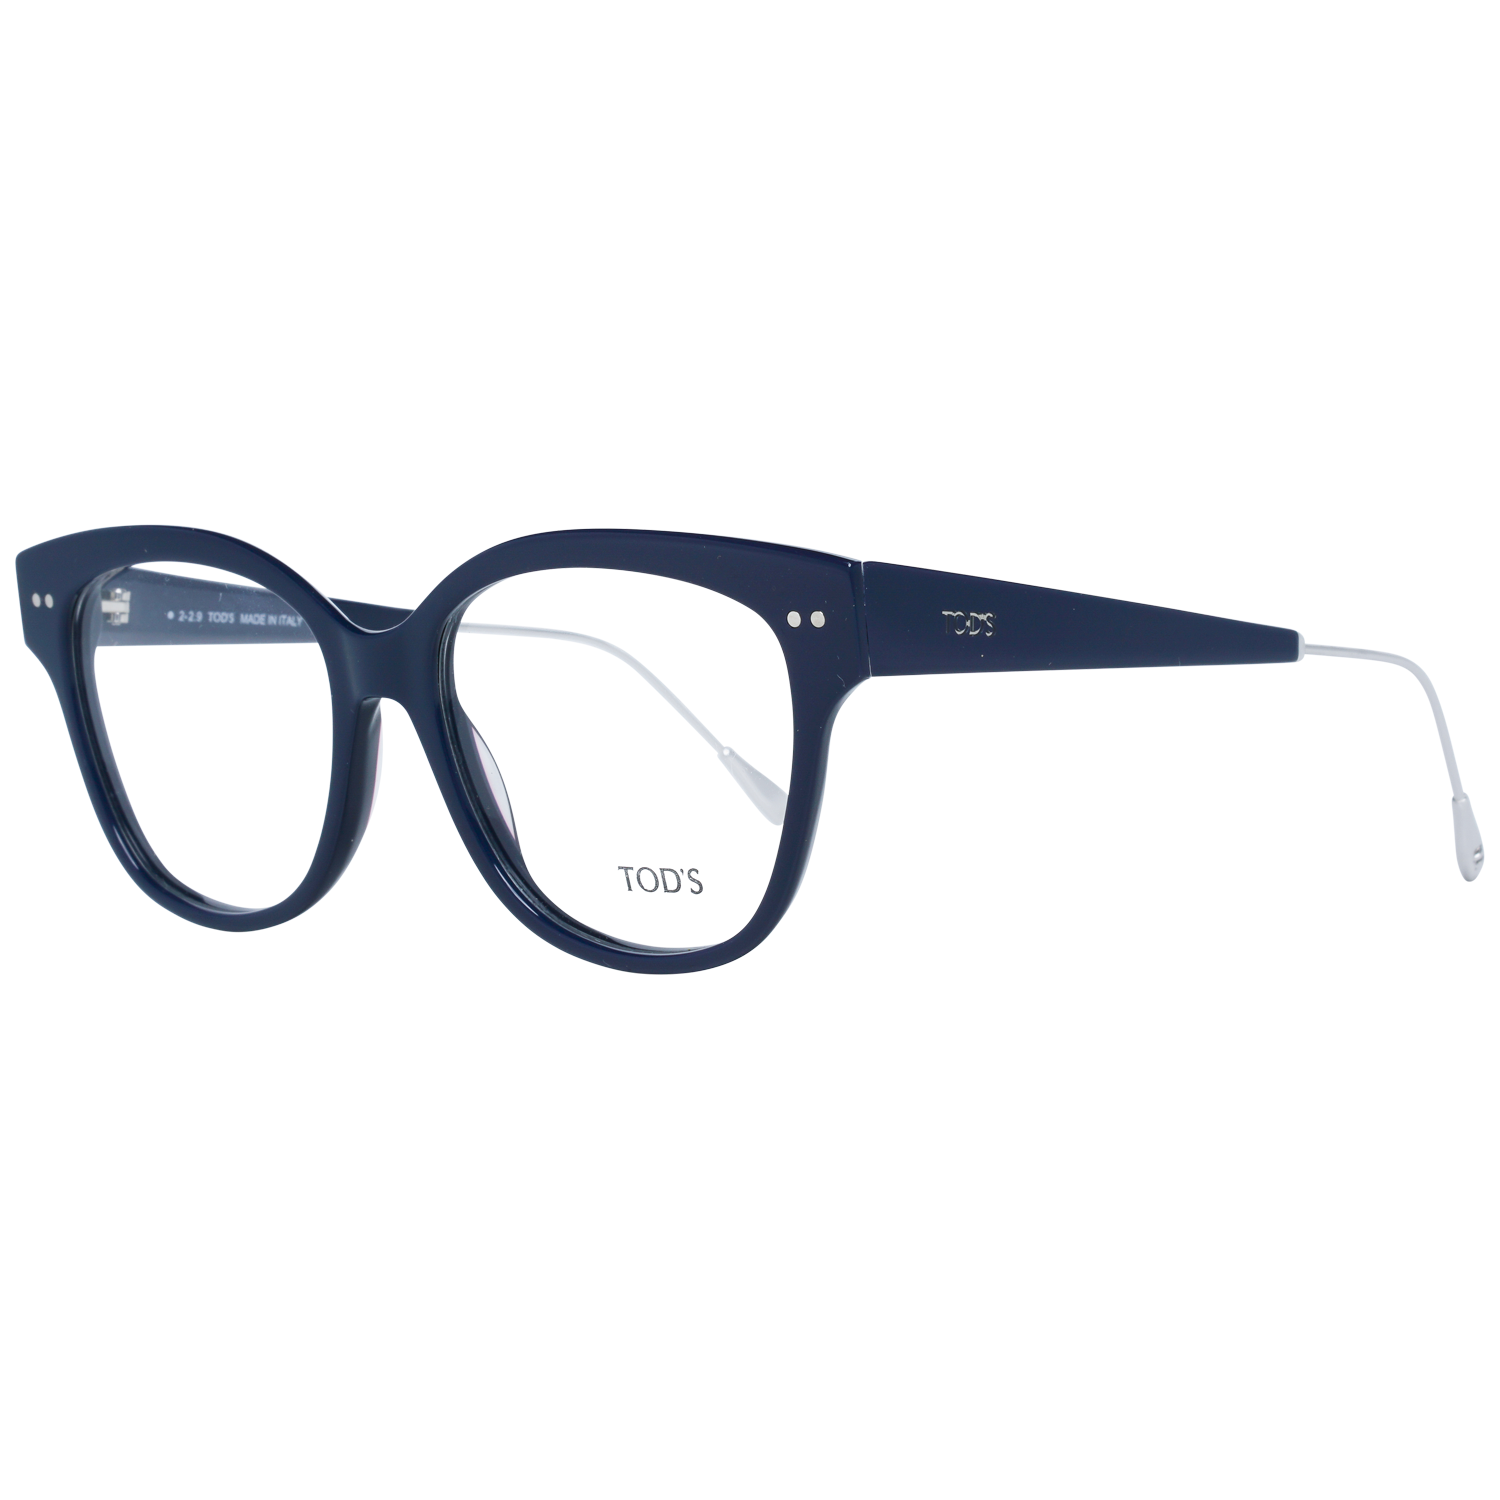 Tods Frames Tods Glasses Women's Blue Round Frames TO5191 090 53mm Eyeglasses Eyewear UK USA Australia 